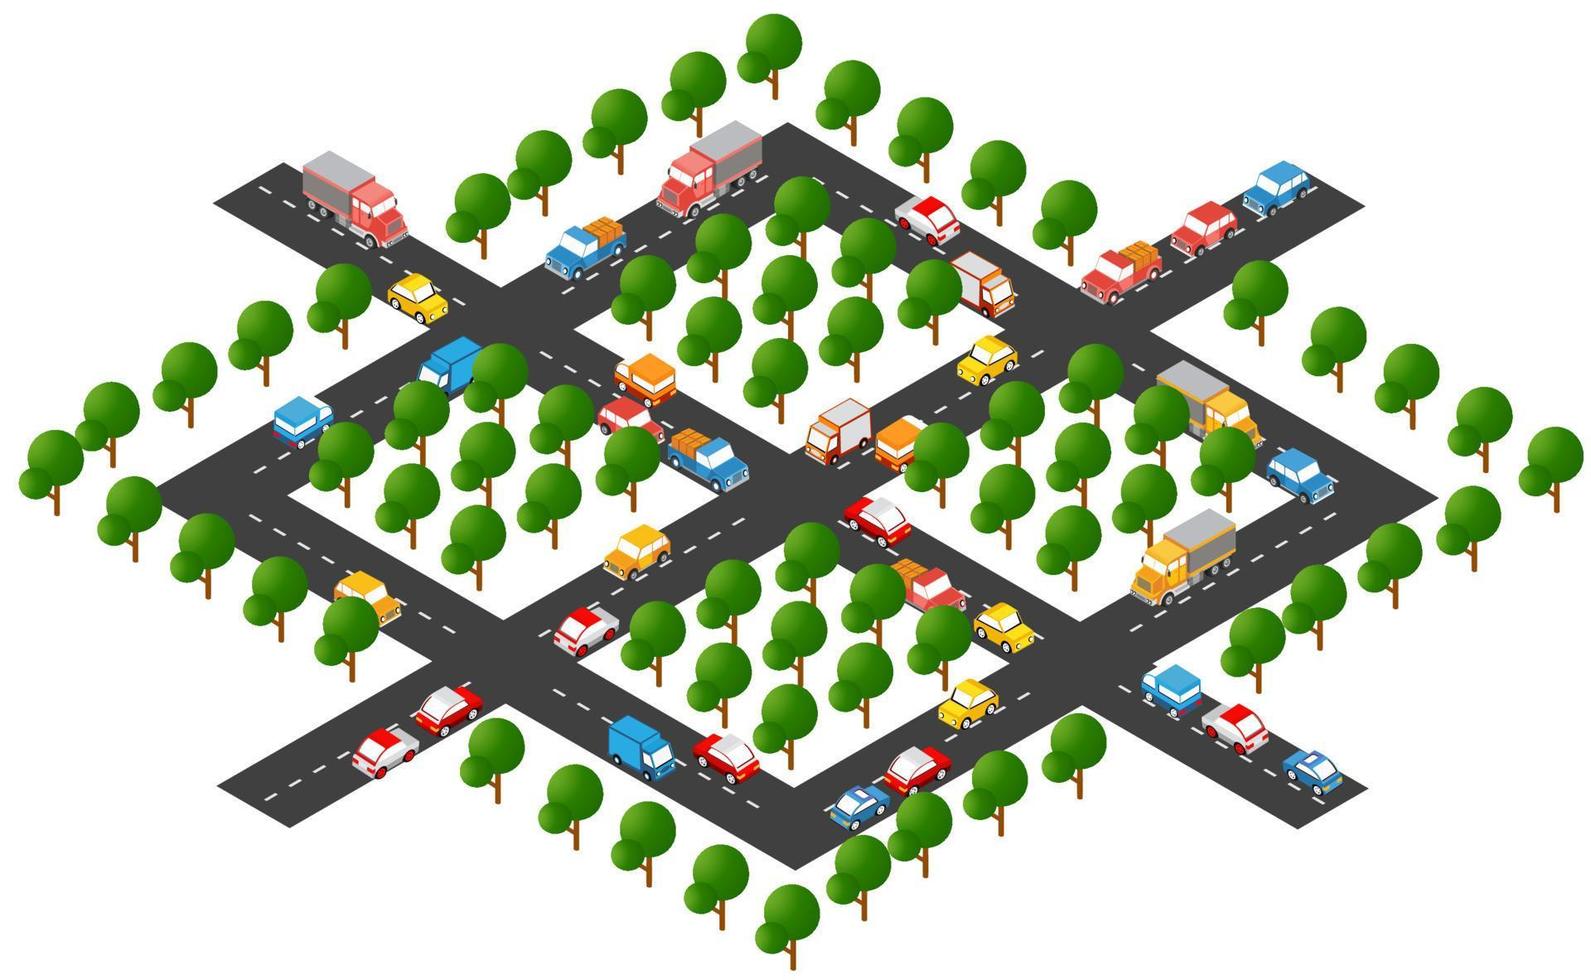 ensemble infographique environnemental de carte de ville isométrique, avec transport, éléments de conception graphique. modèle de concept d'information urbaine avec icônes statistiques, graphiques, diagrammes vecteur